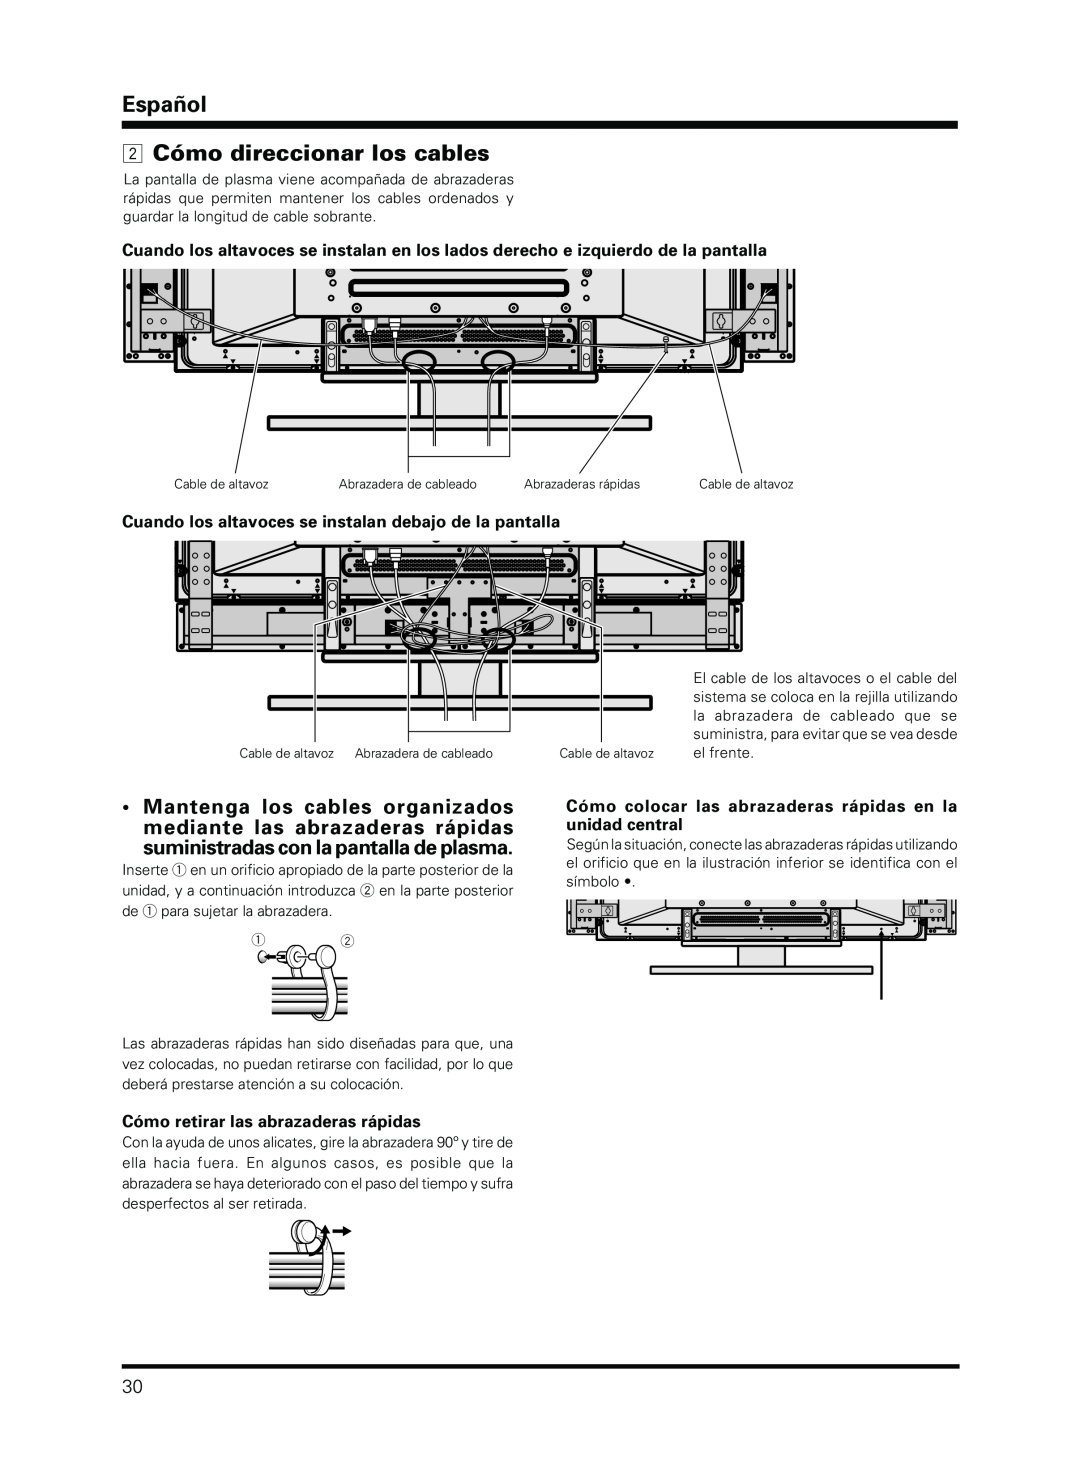 Pioneer PDP-S13-LR manual Español 2 Cómo direccionar los cables, Cuando los altavoces se instalan debajo de la pantalla 